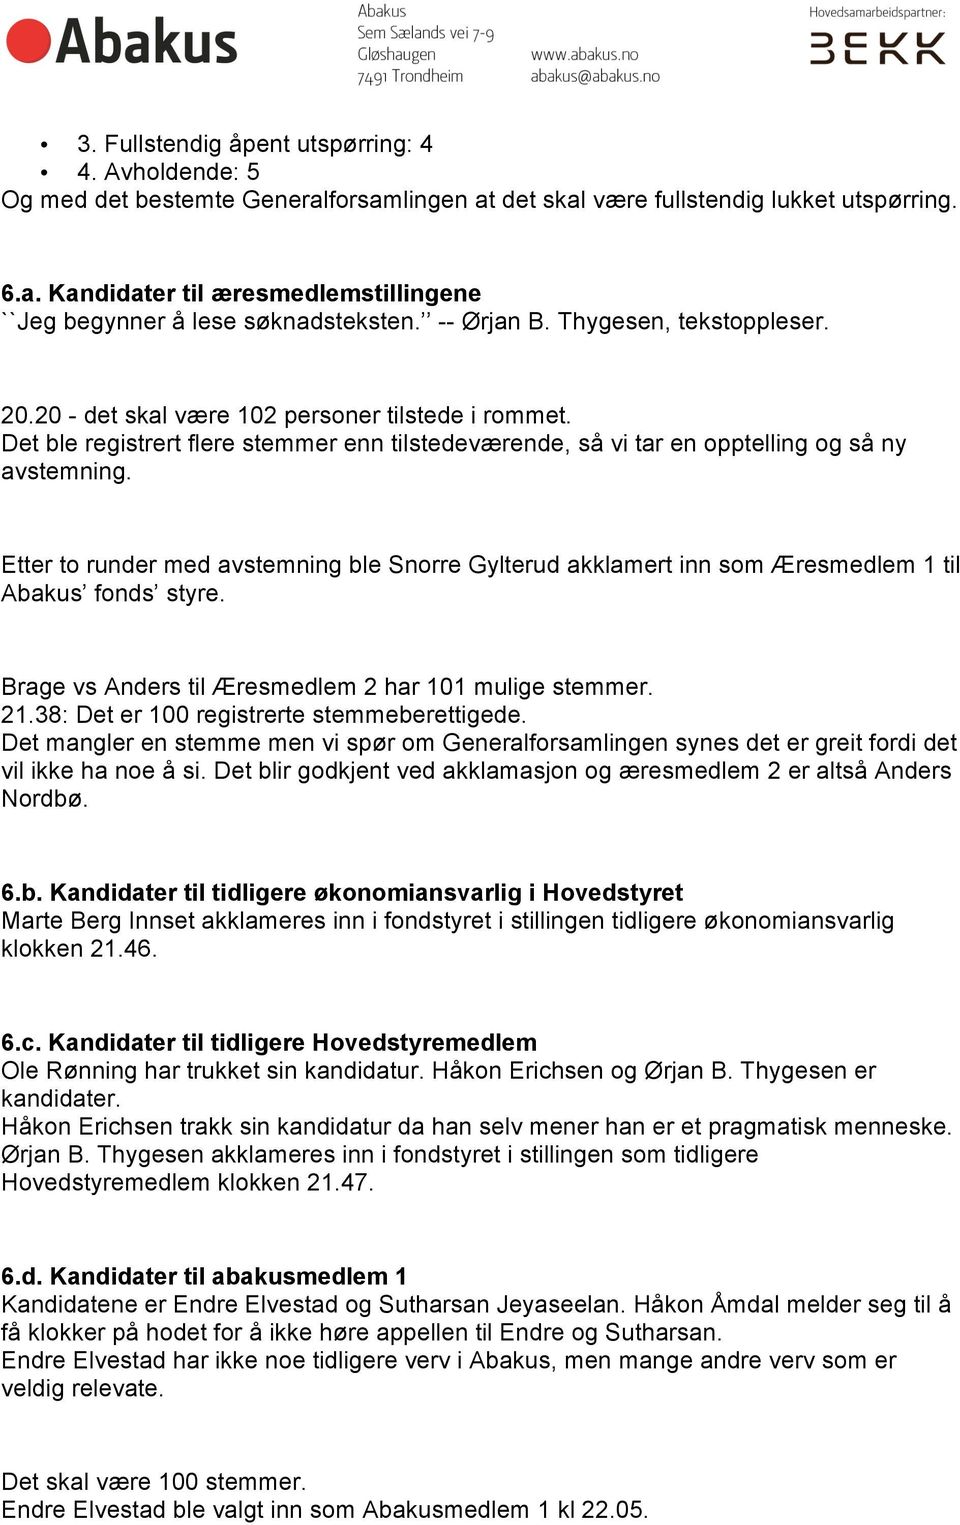 Etter to runder med avstemning ble Snorre Gylterud akklamert inn som Æresmedlem 1 til Abakus fonds styre. Brage vs Anders til Æresmedlem 2 har 101 mulige stemmer. 21.